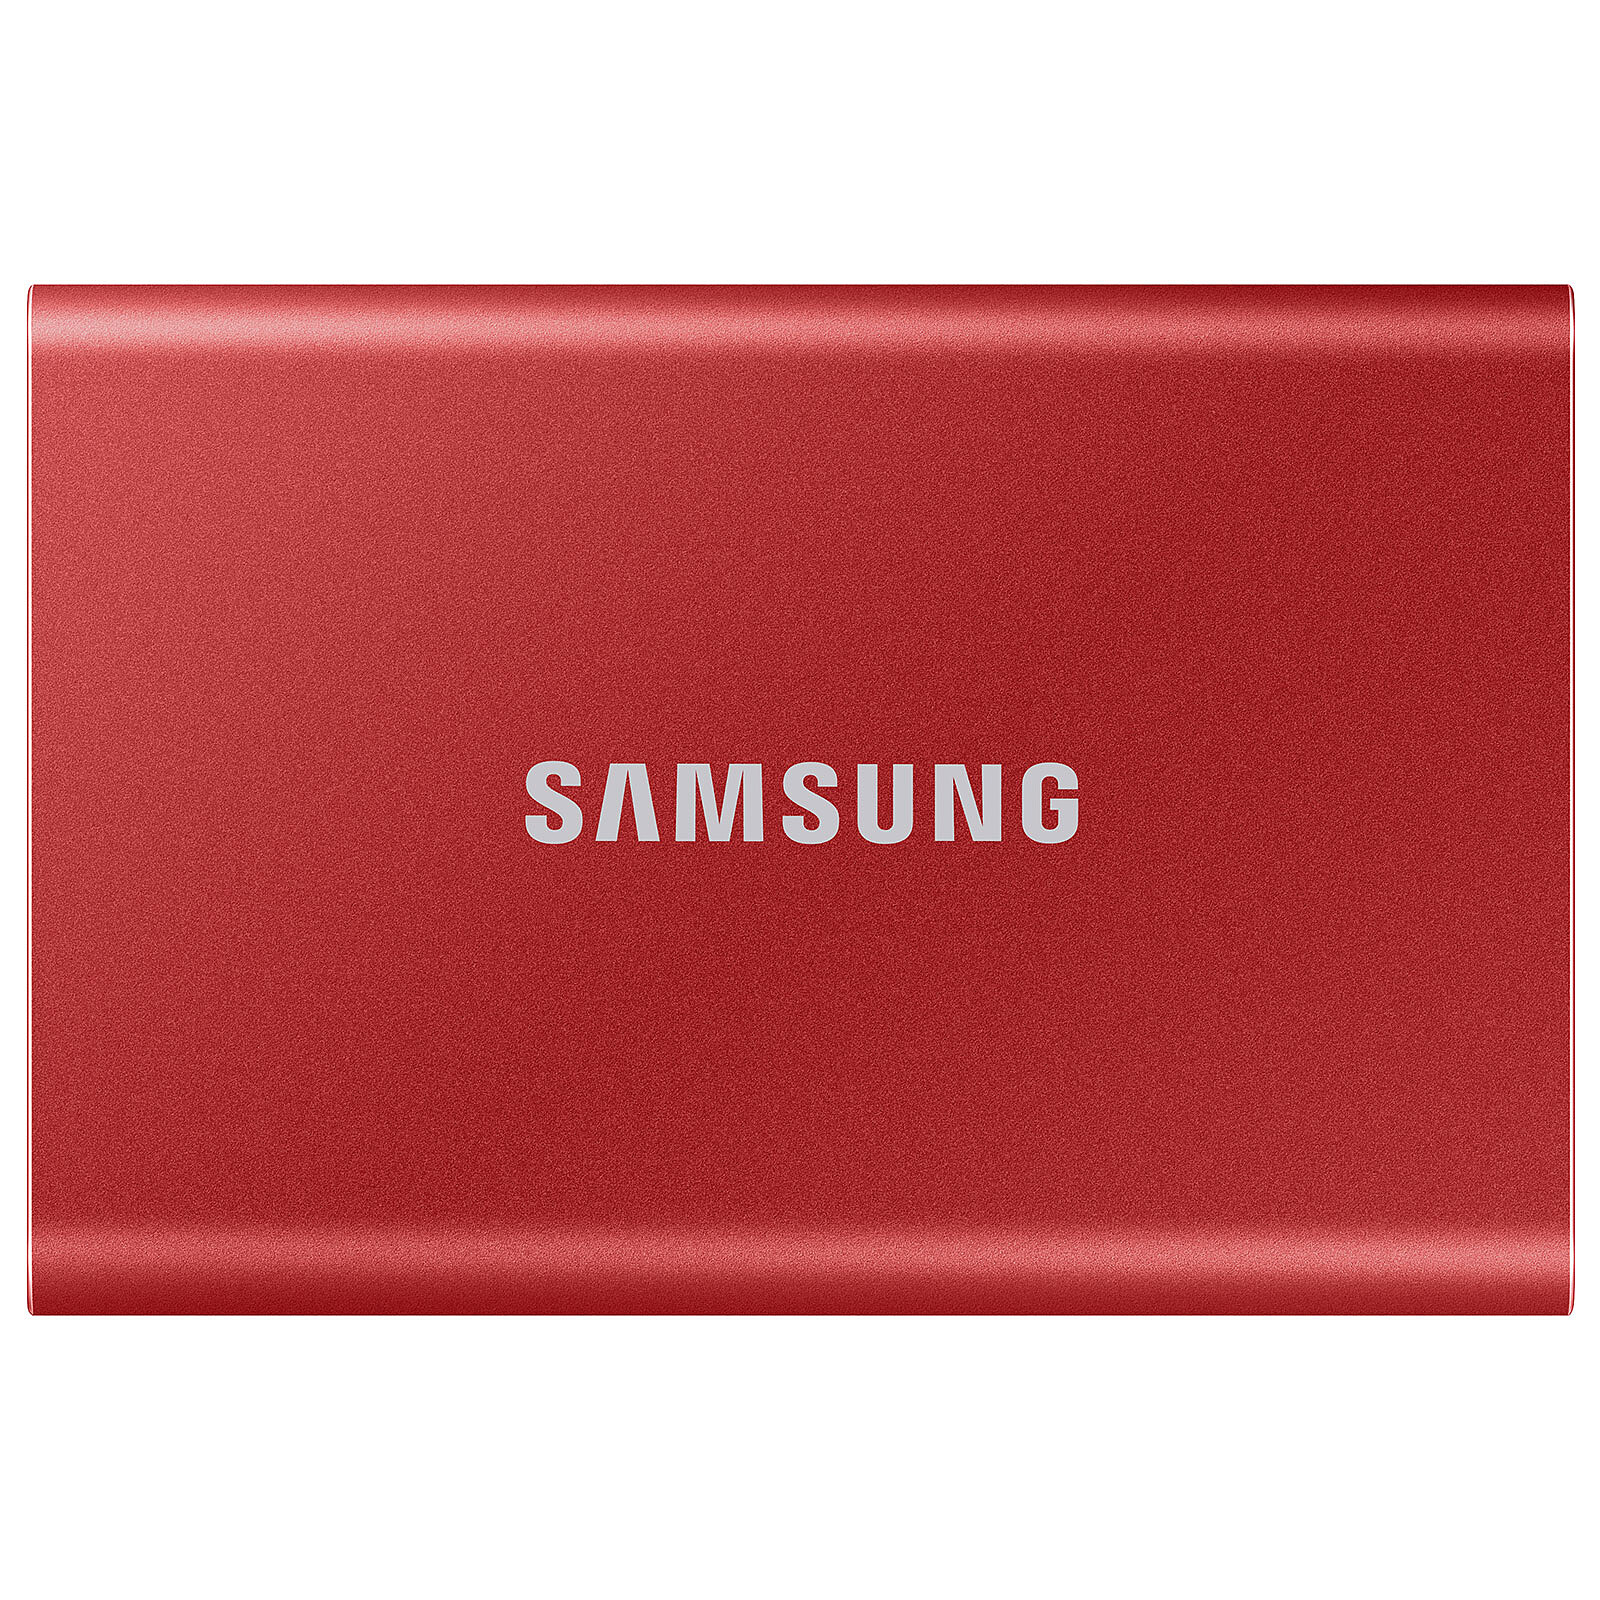 Samsung SSD portatile T7 1Tb Rosso - Hard disk esterno - Garanzia 3 anni  LDLC